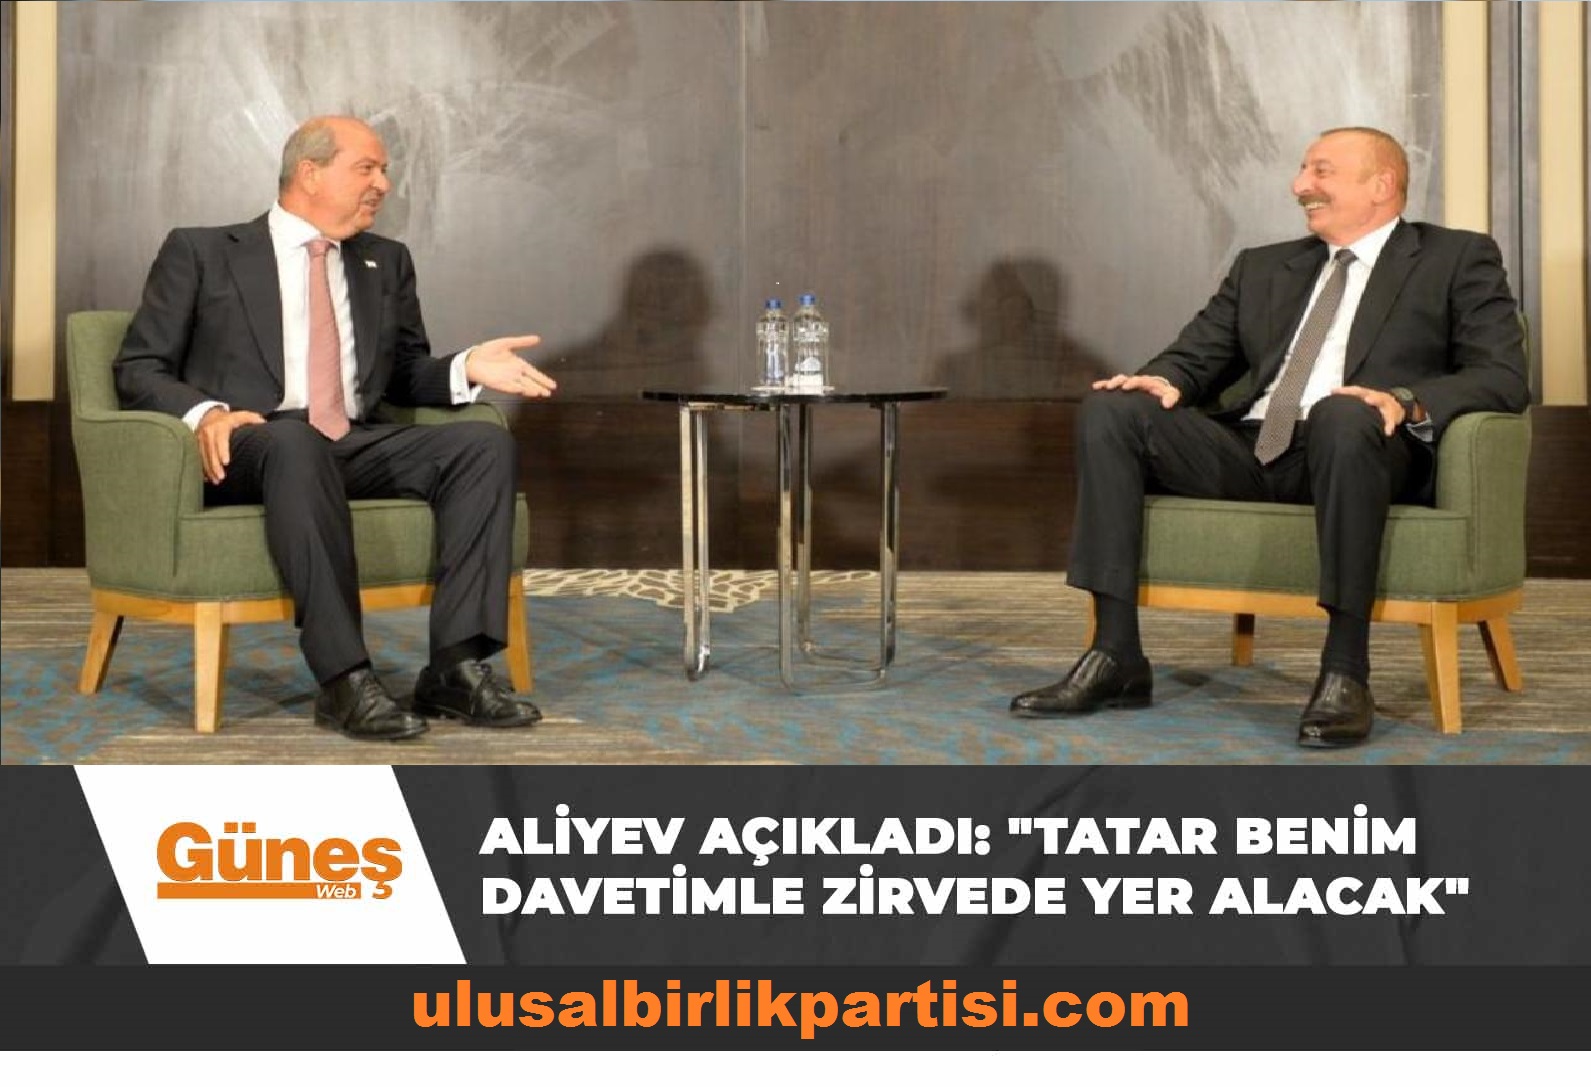 Read more about the article Aliyev açıkladı: “Tatar benim davetimle zirvede yer alacak”